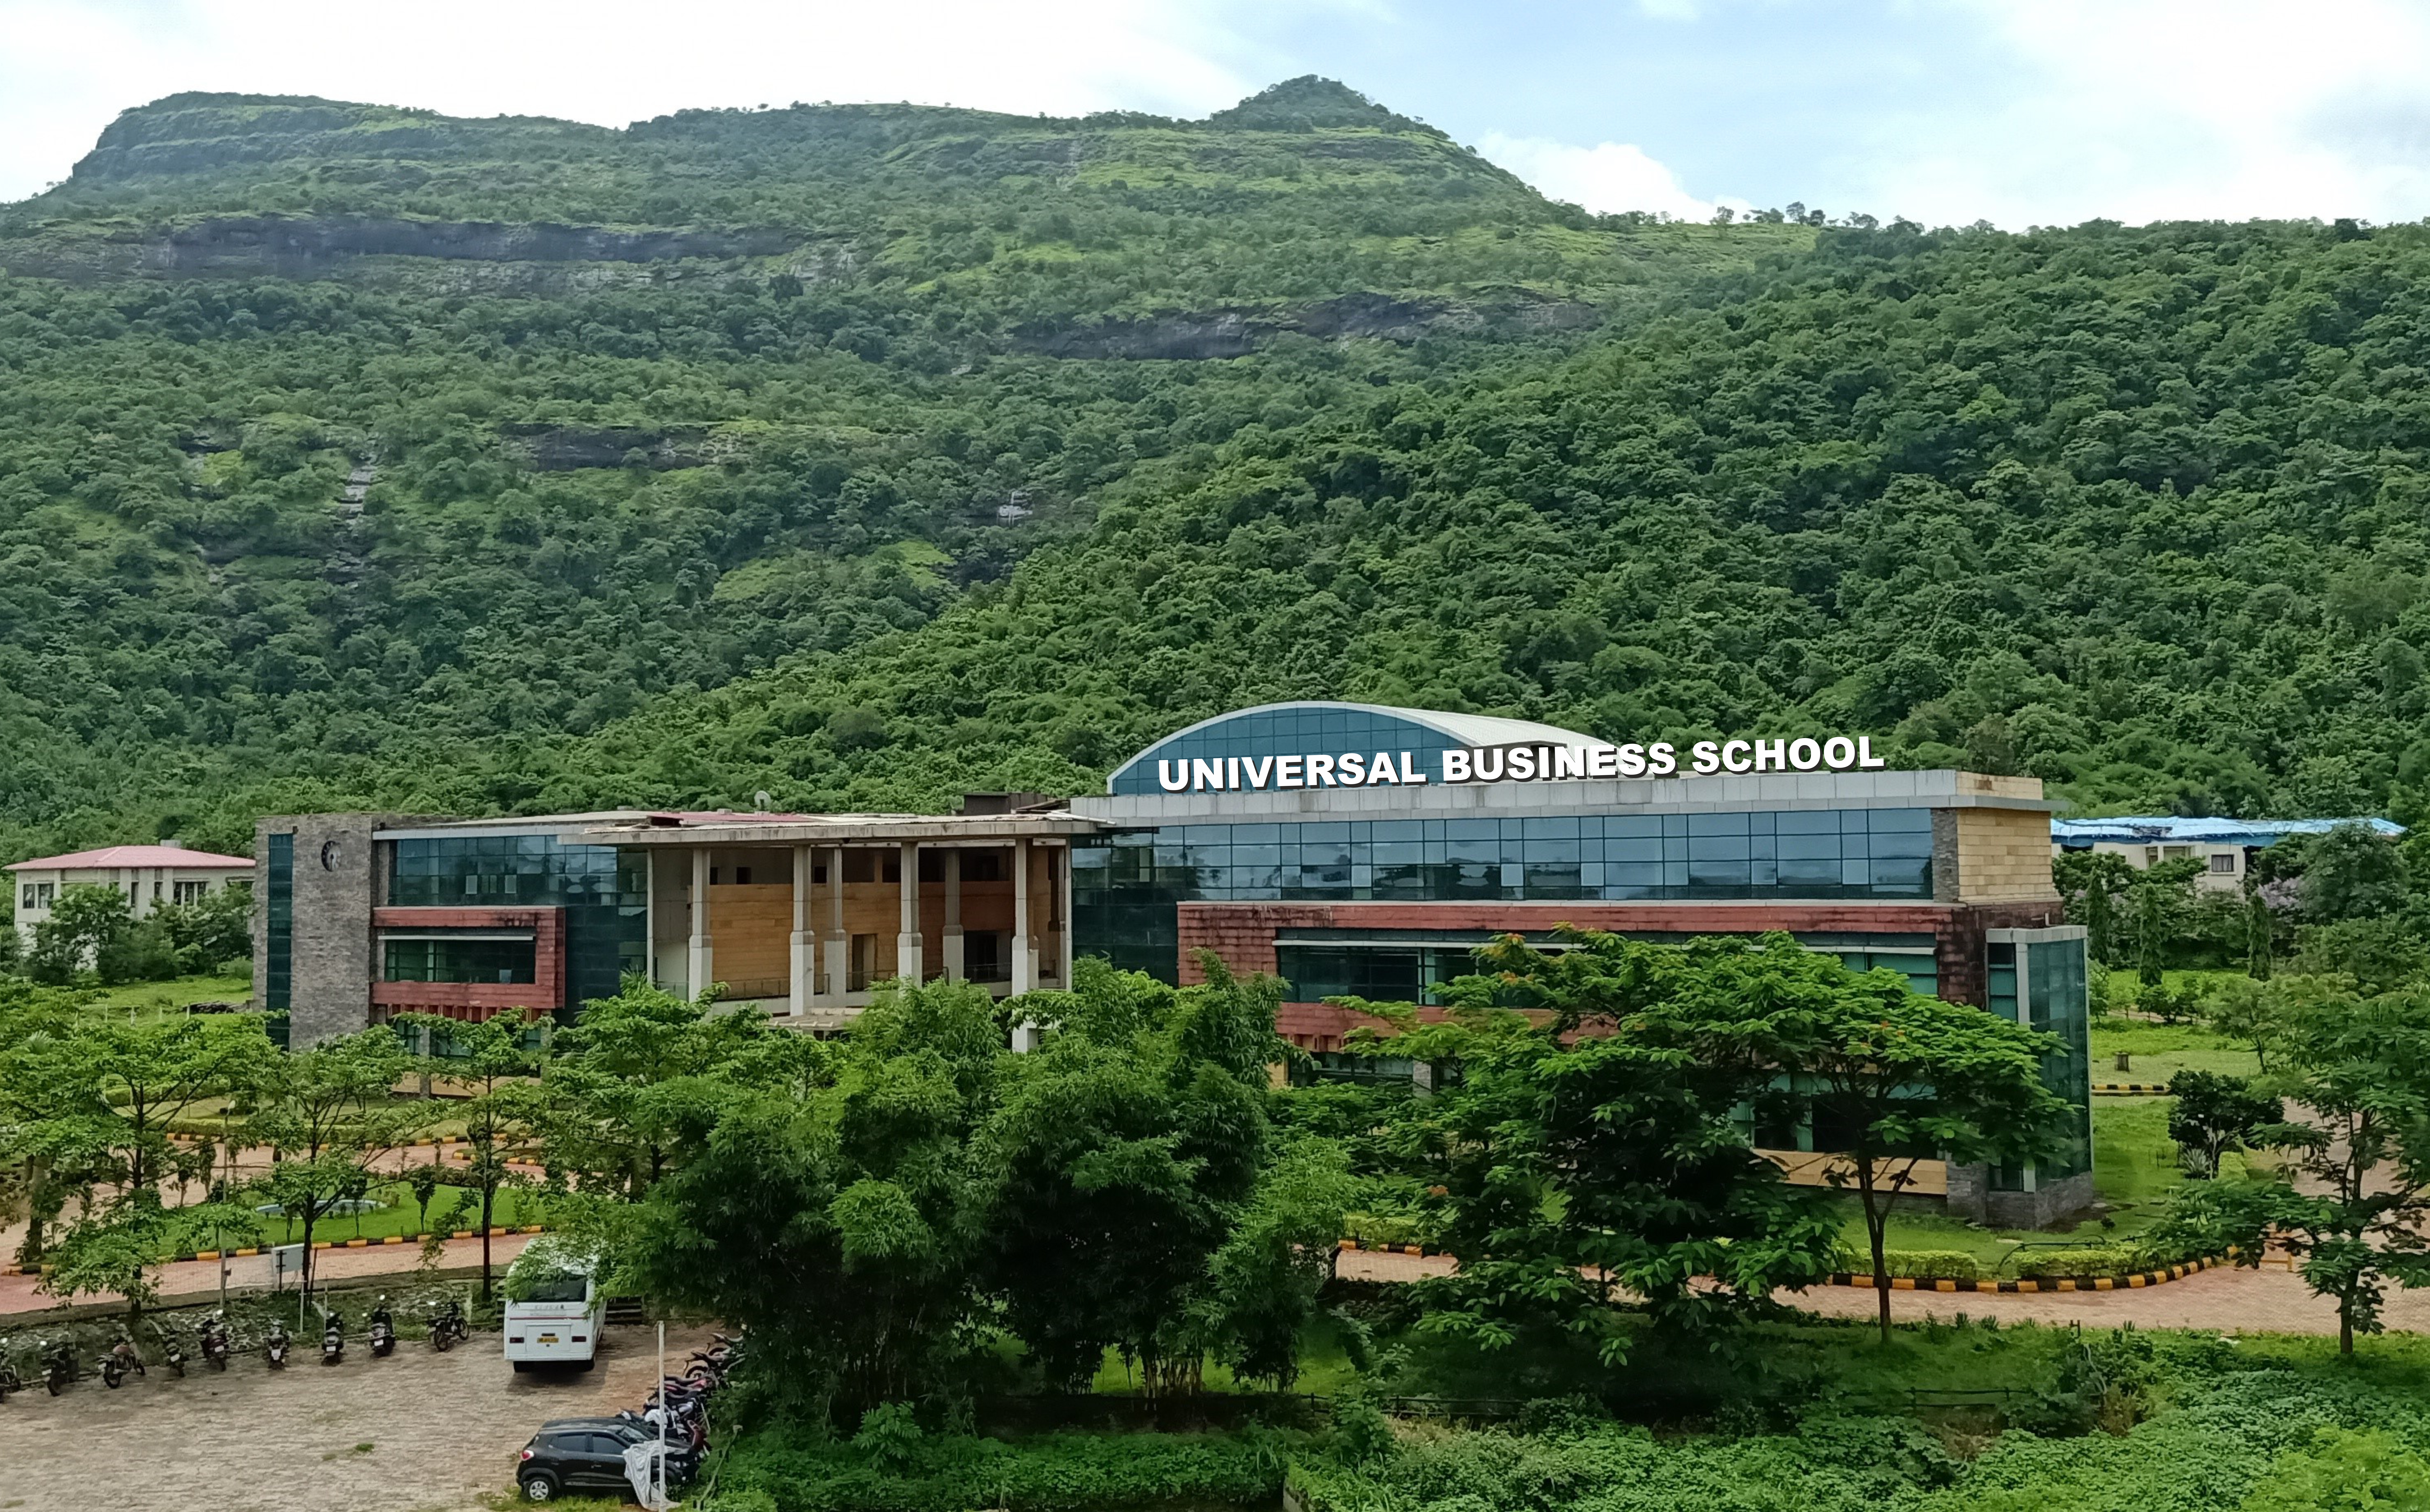  Universal Business School (UBS)